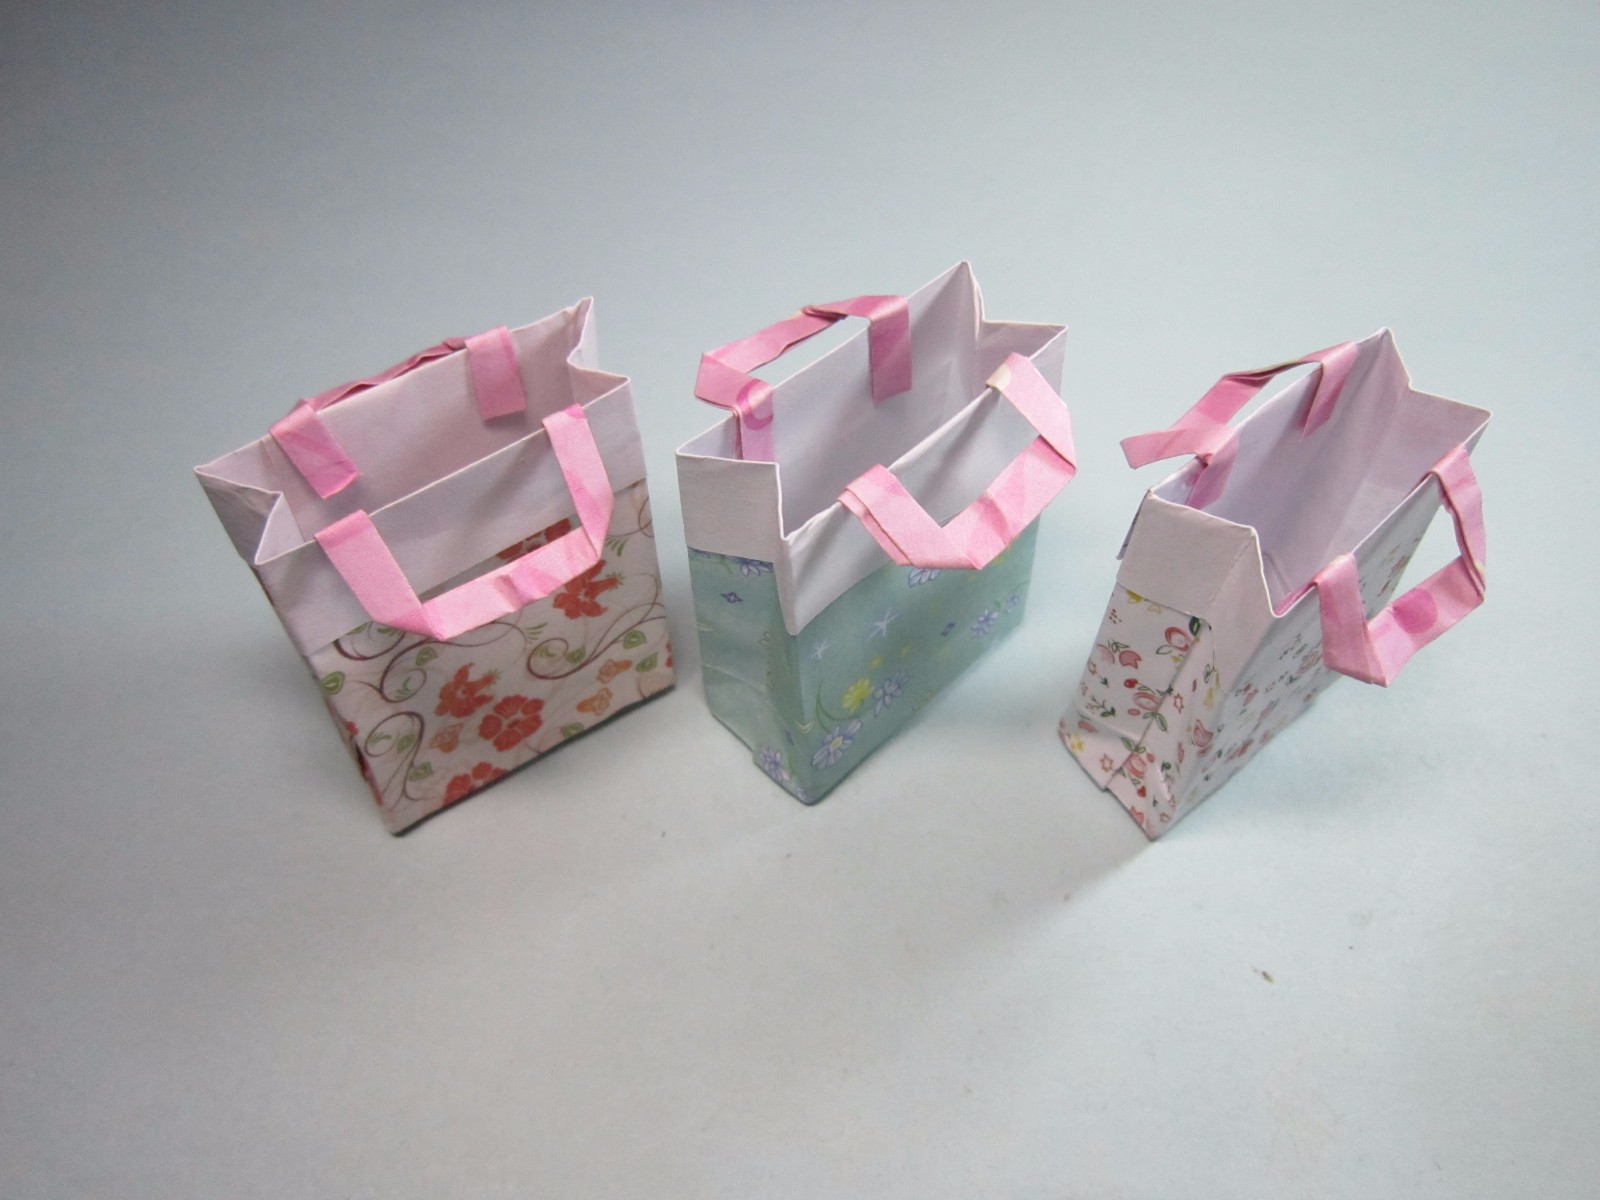 手工折纸礼品袋看一遍就能学会简单又漂亮礼品袋的折法